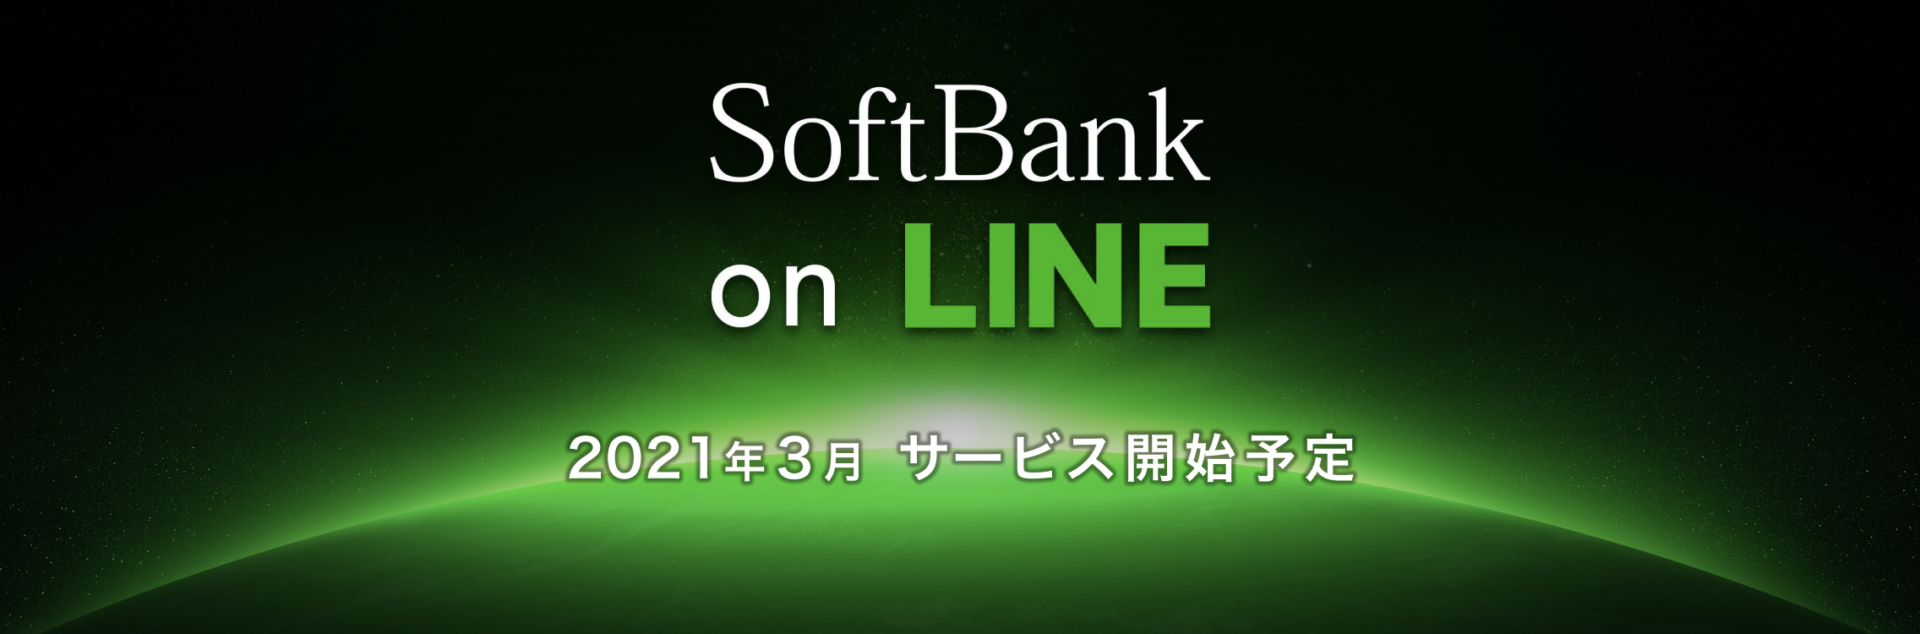 【ahamo対抗】ソフトバンクモバイル+LINEの新ブランド発表